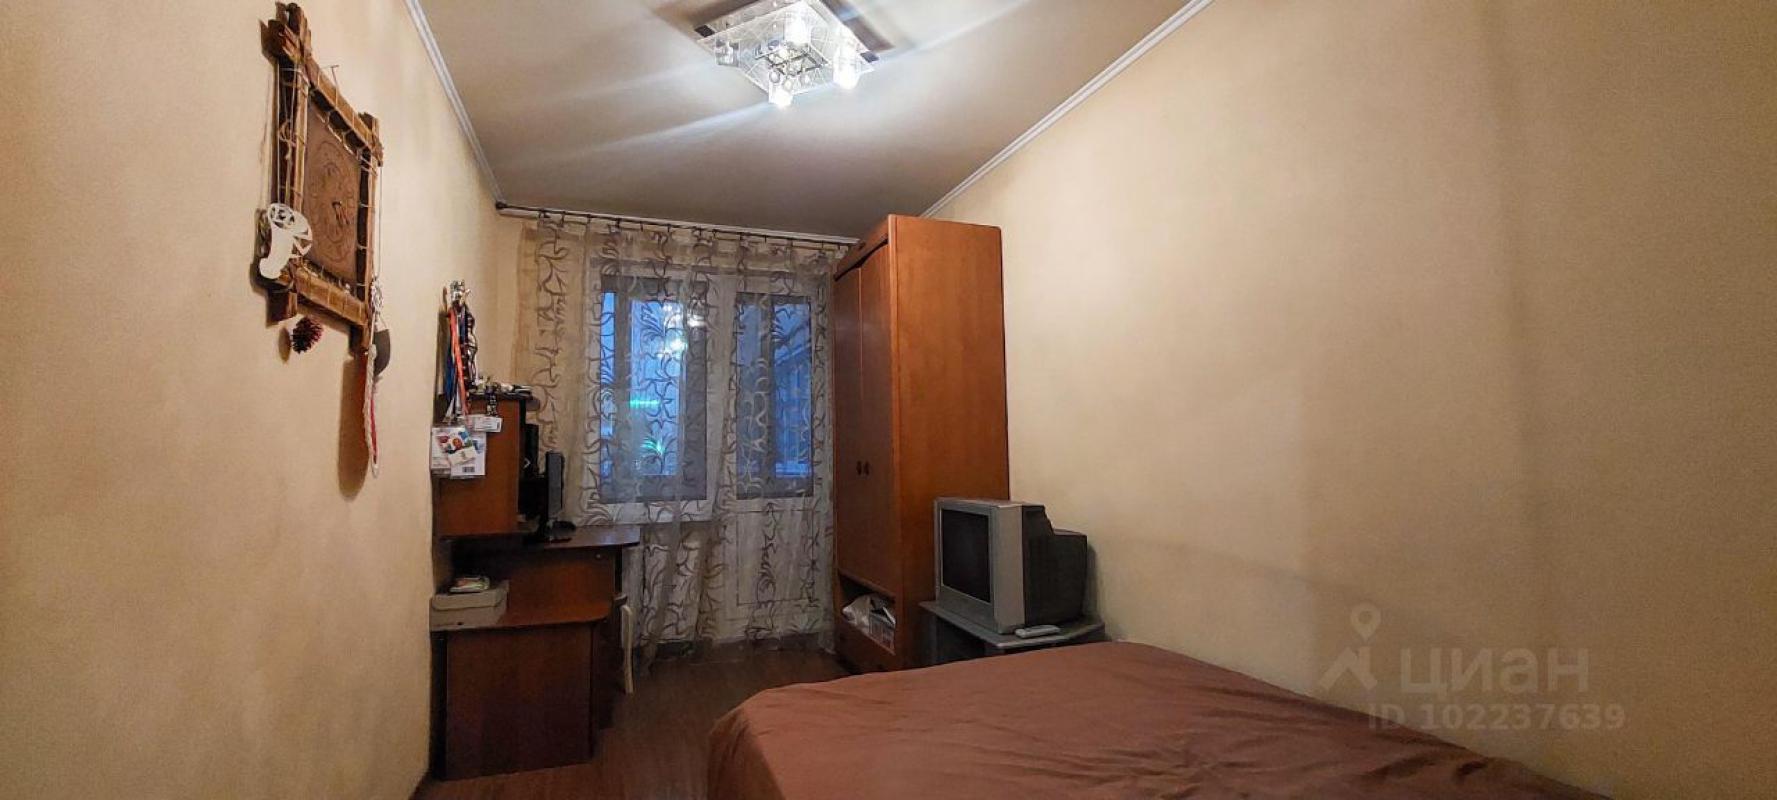 Продам 2х комнатную квартиру в г. - Новотроицк